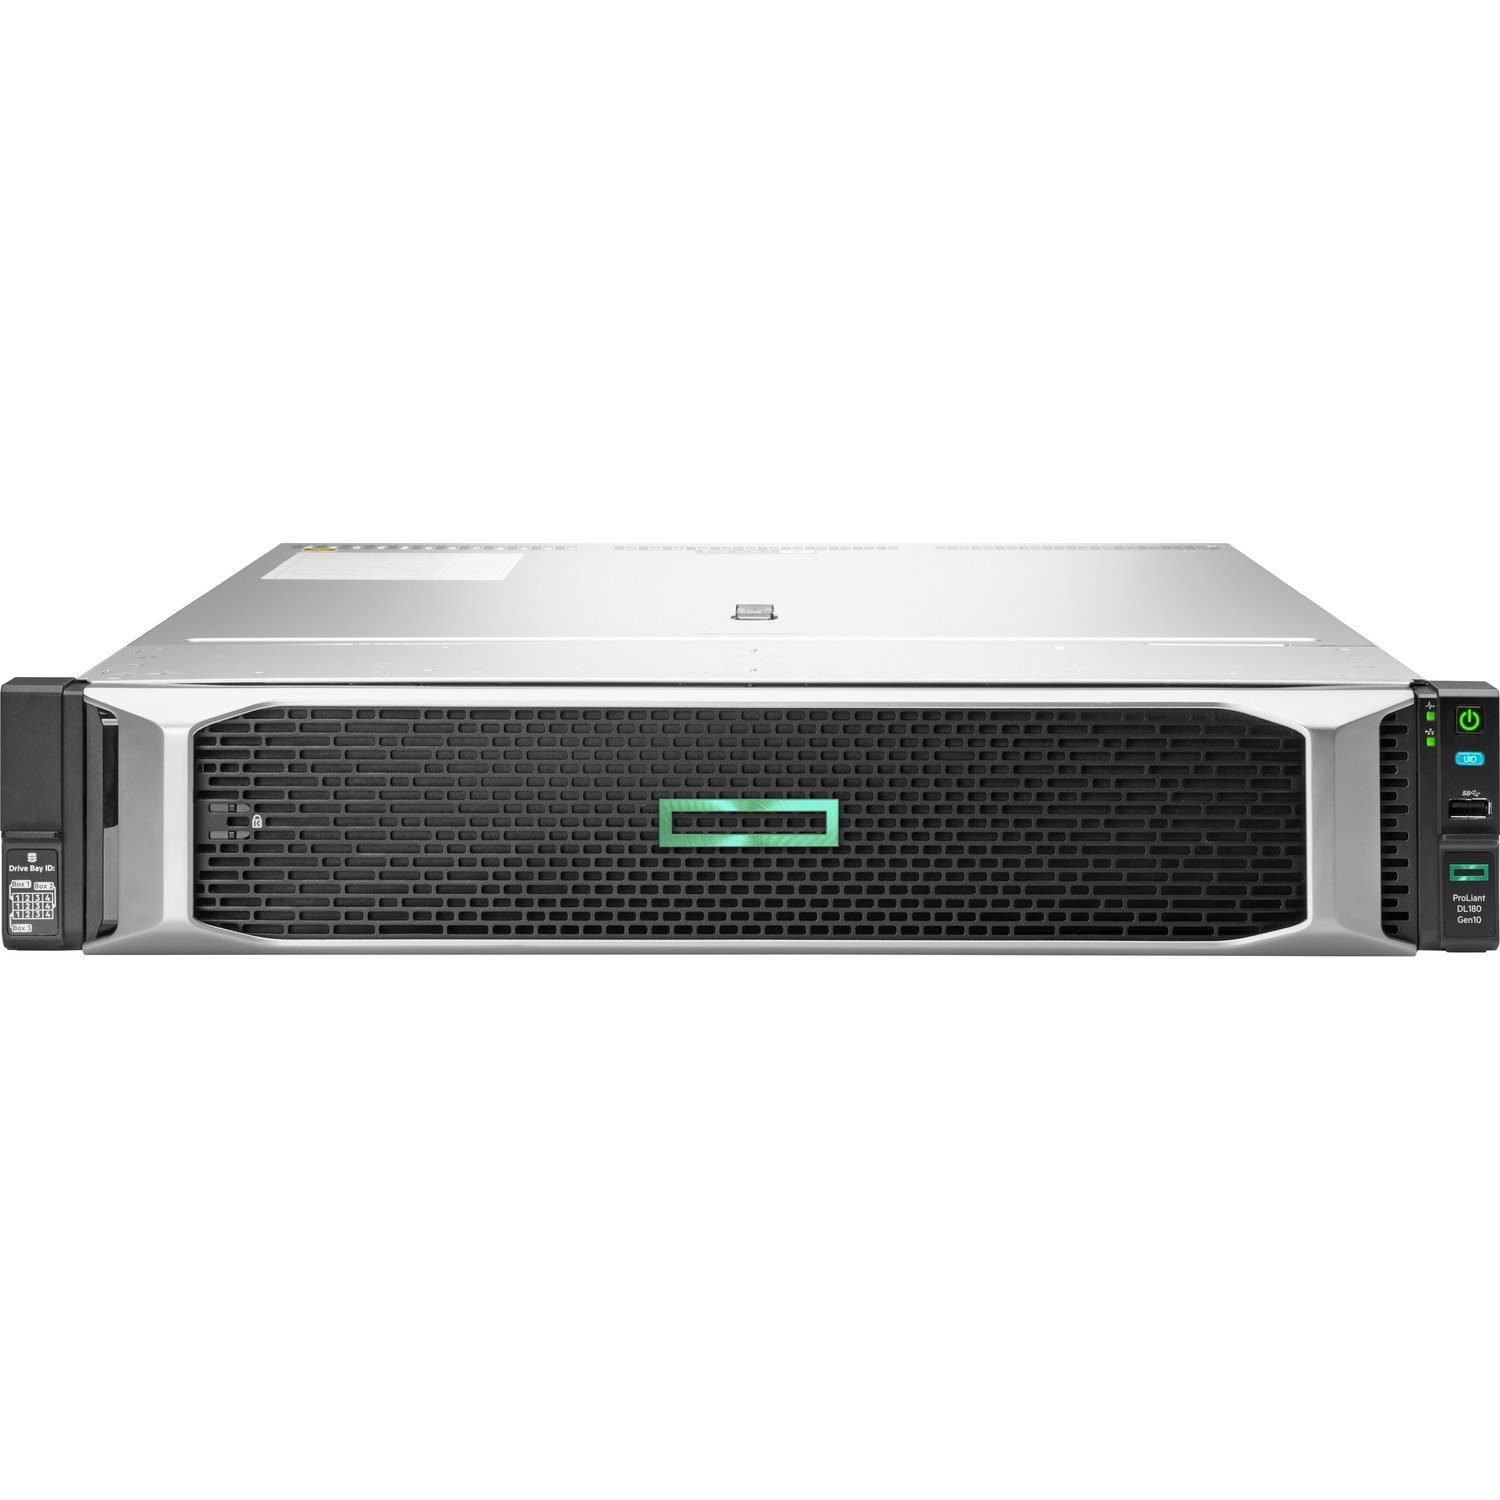 HPE ProLiant DL180 G10 2U Rack Server - 1 x Intel Xeon Silver 4110 2.10 GHz - 16 GB RAM - Serial ATA/600 Controller